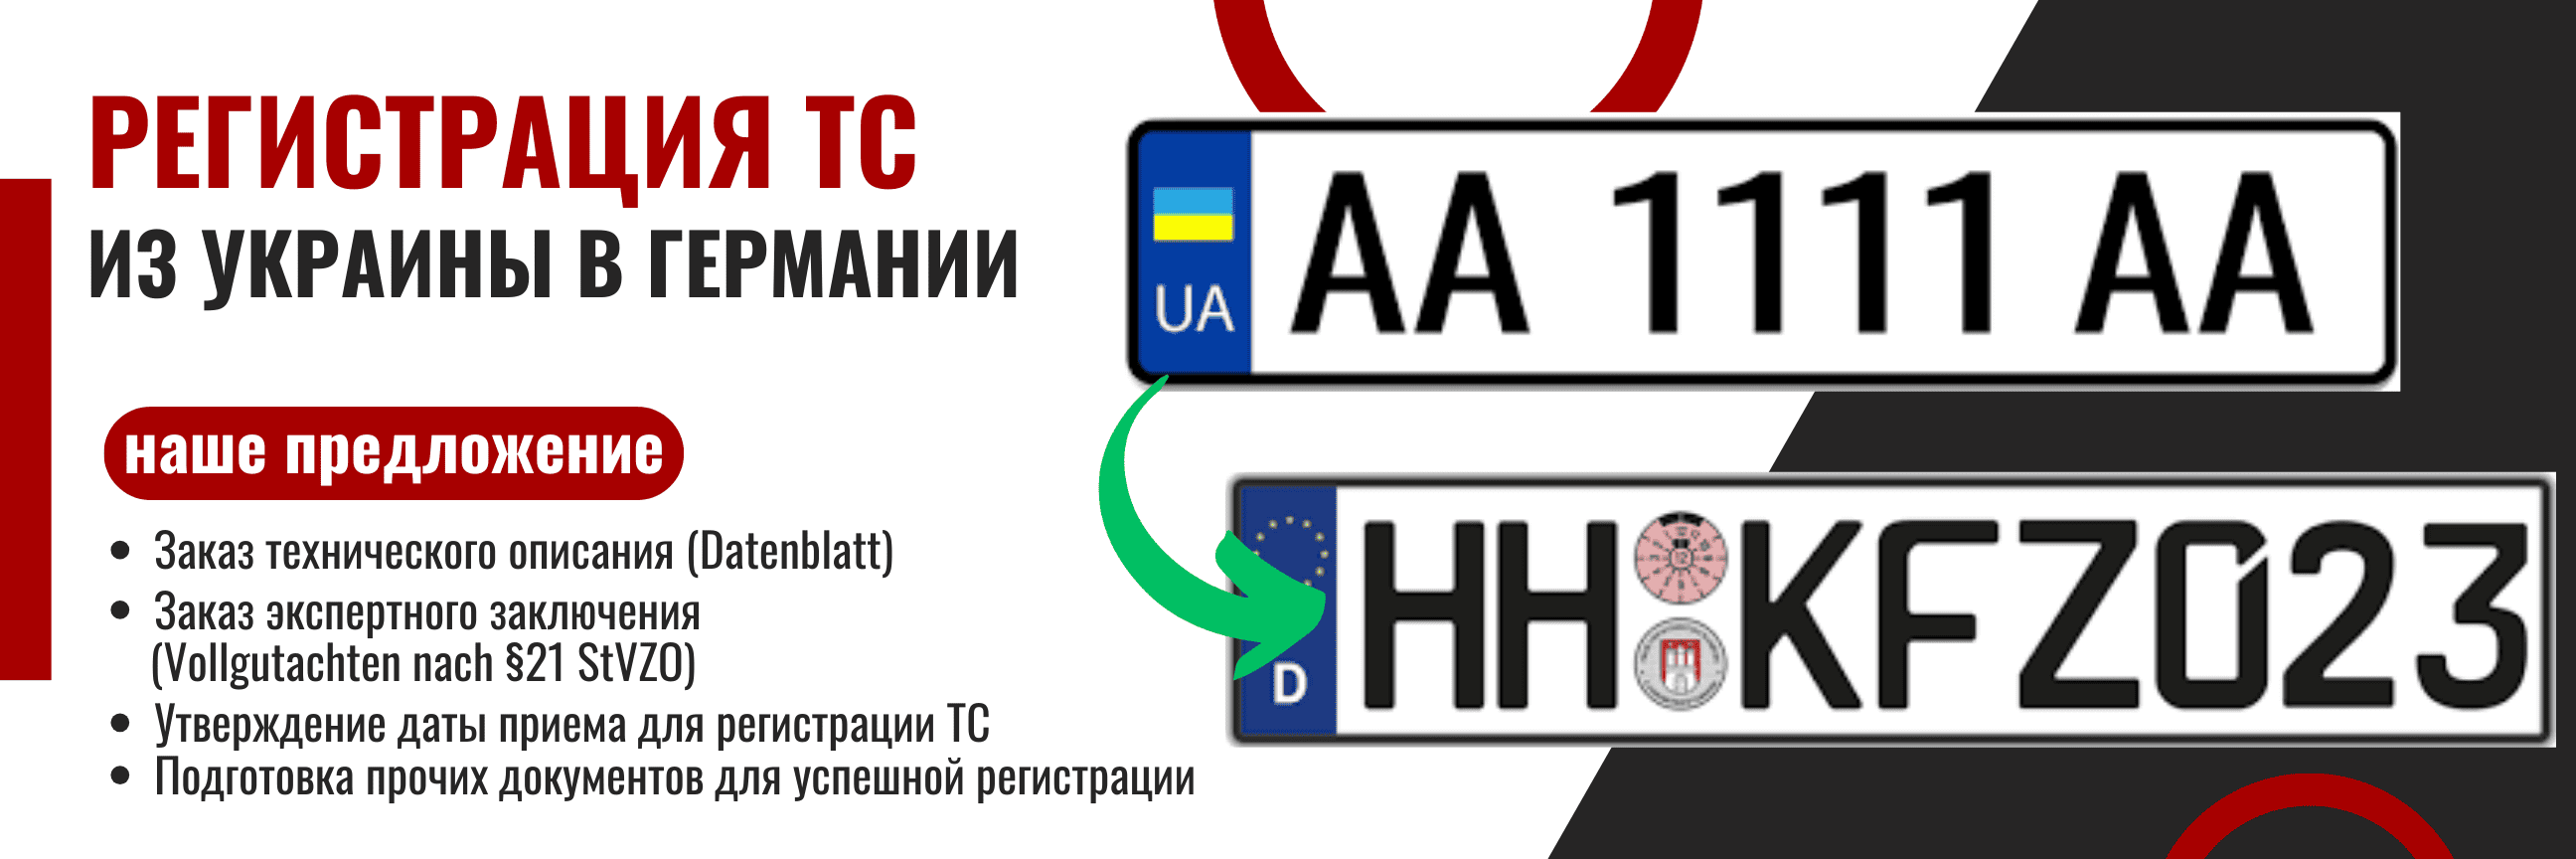 Регистрация транспортного средства с украинскими номерами в Германии